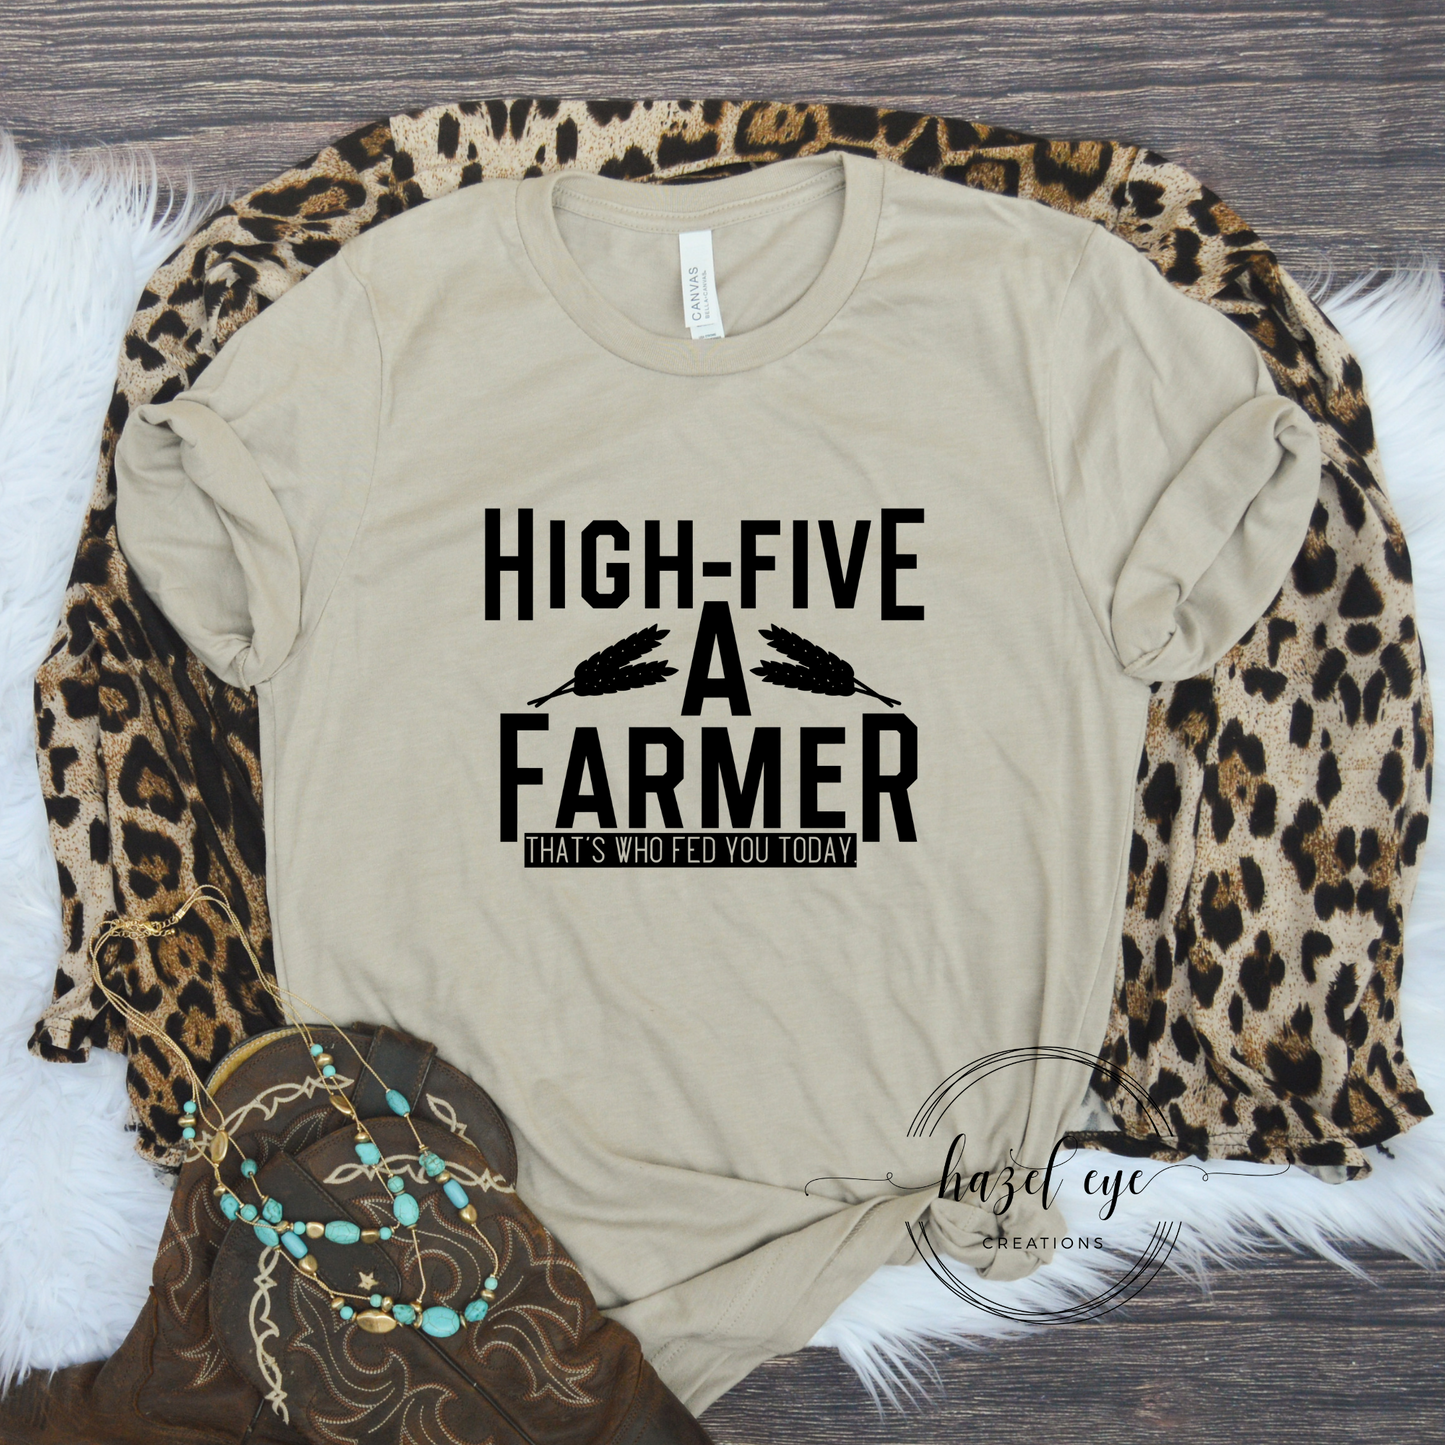 High five a farmer